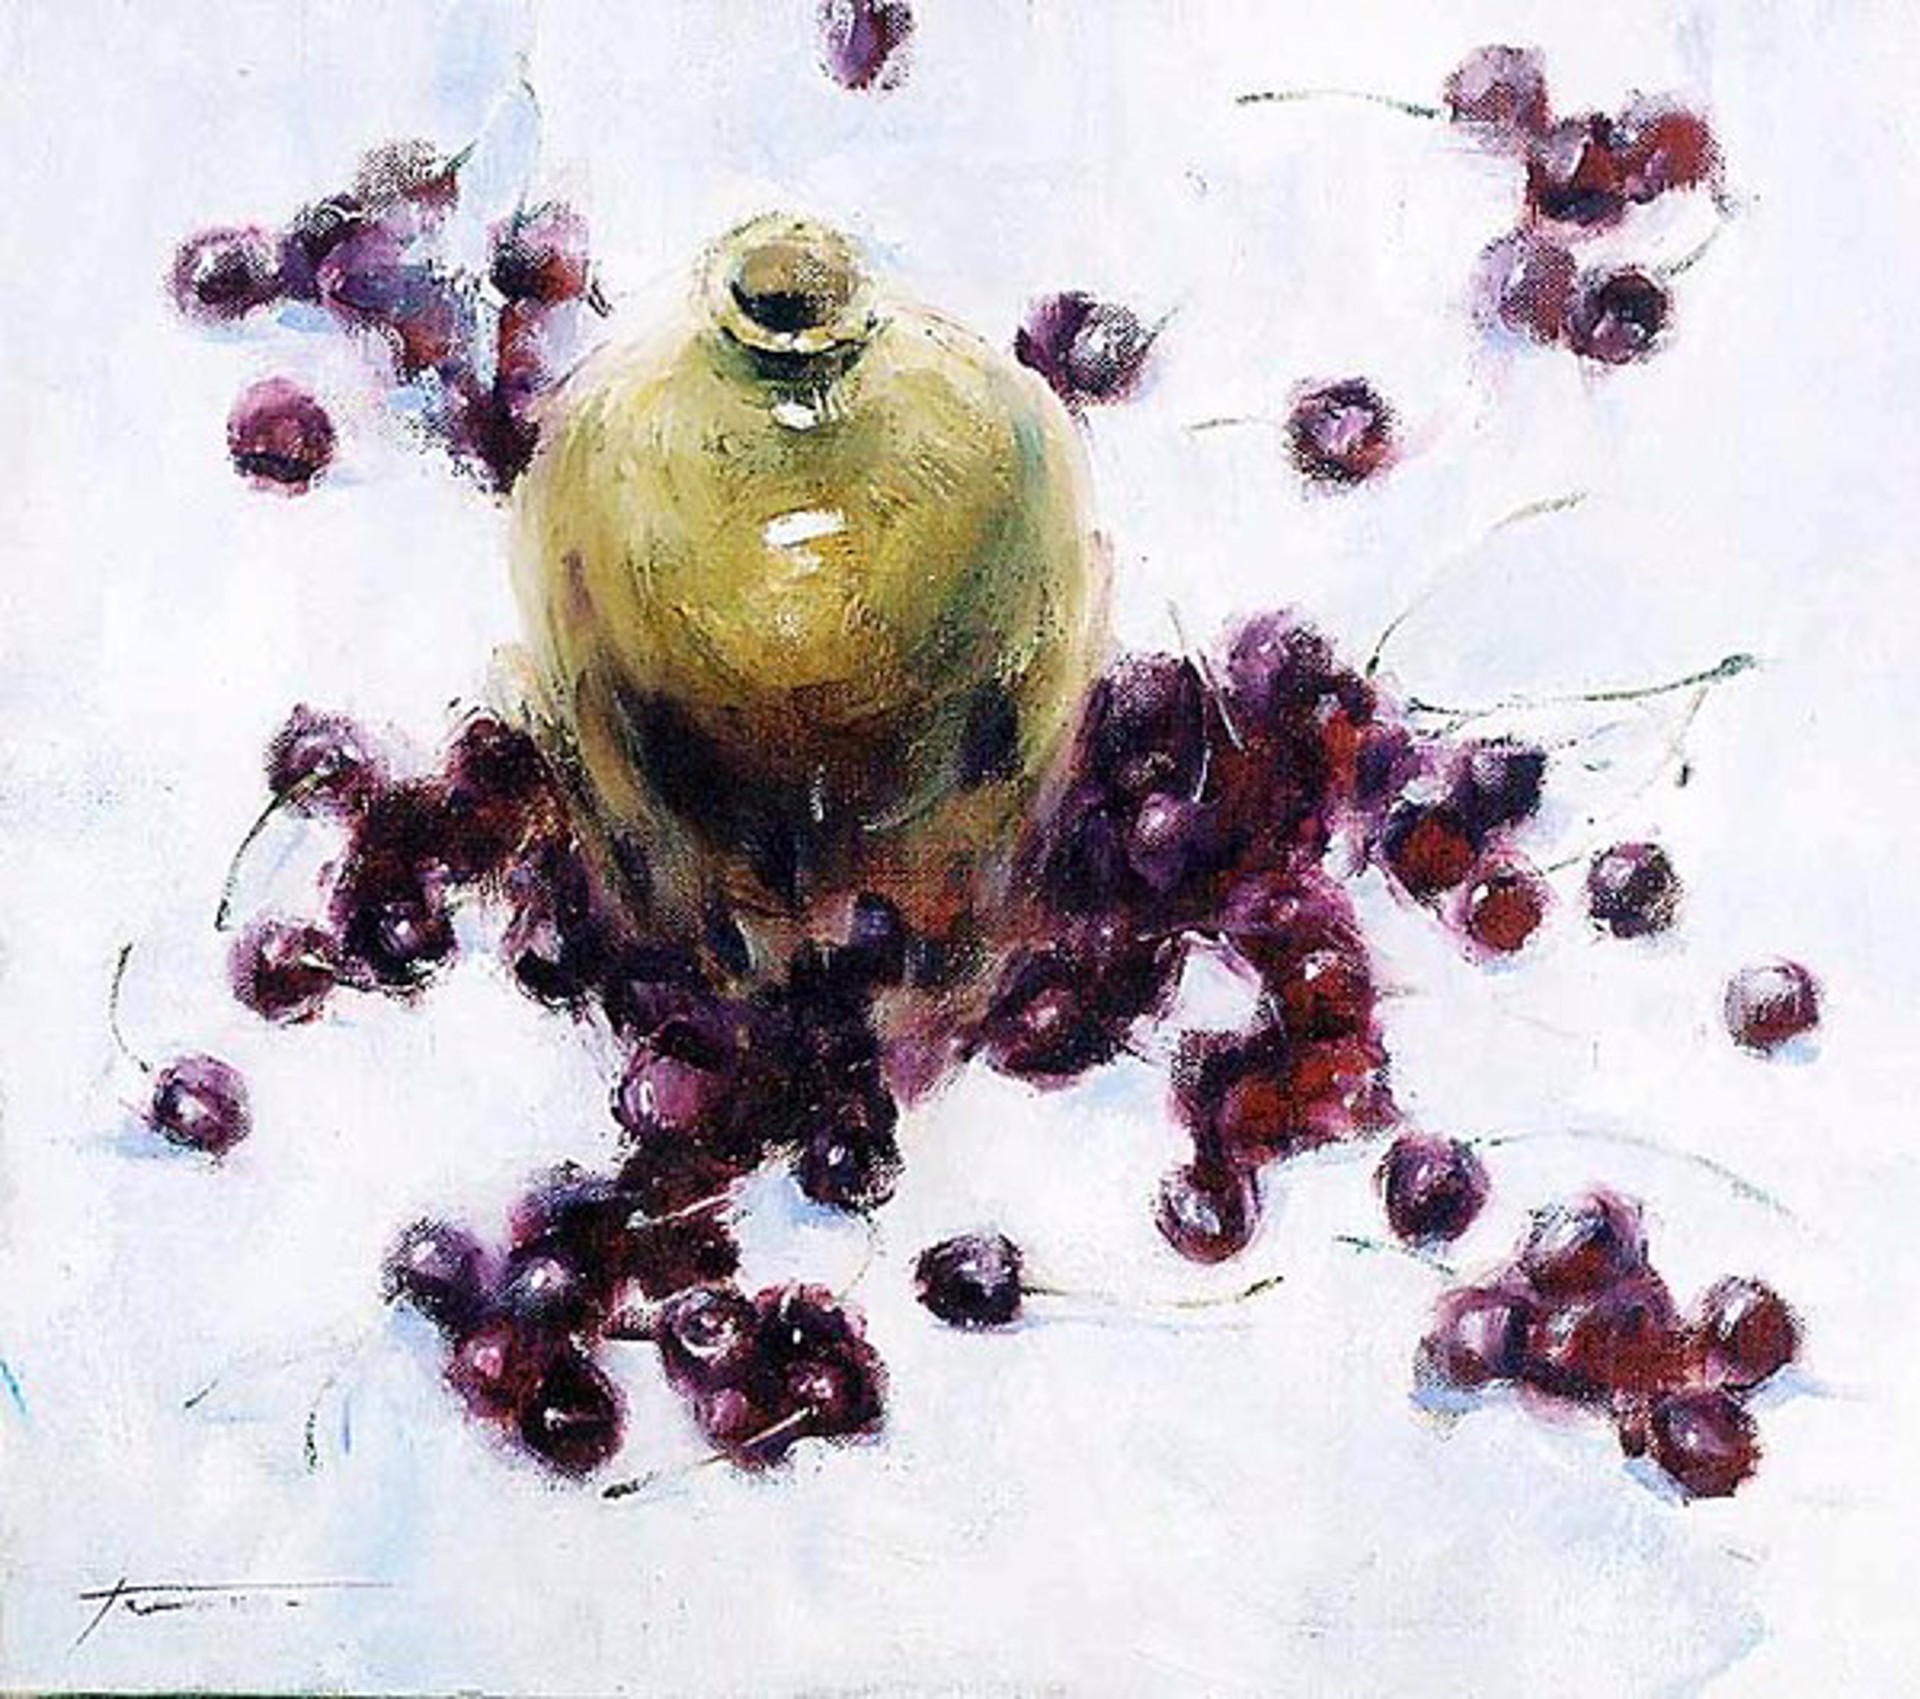 Jug with Cherries by Yana Golubyatnikova